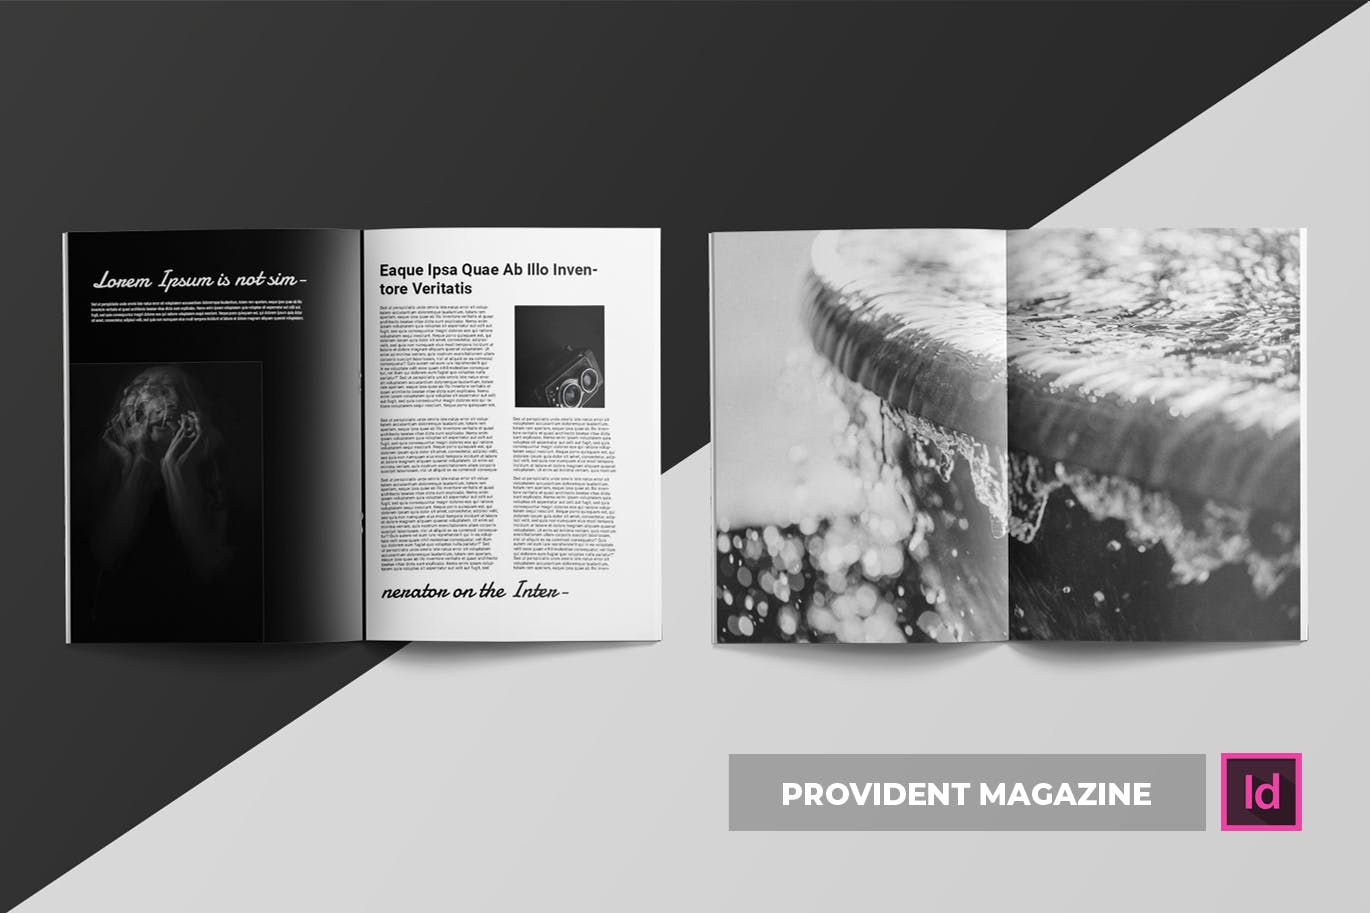 高端摄影主题A4素材库精选杂志版式设计INDD模板 Provident | Magazine Template插图(2)